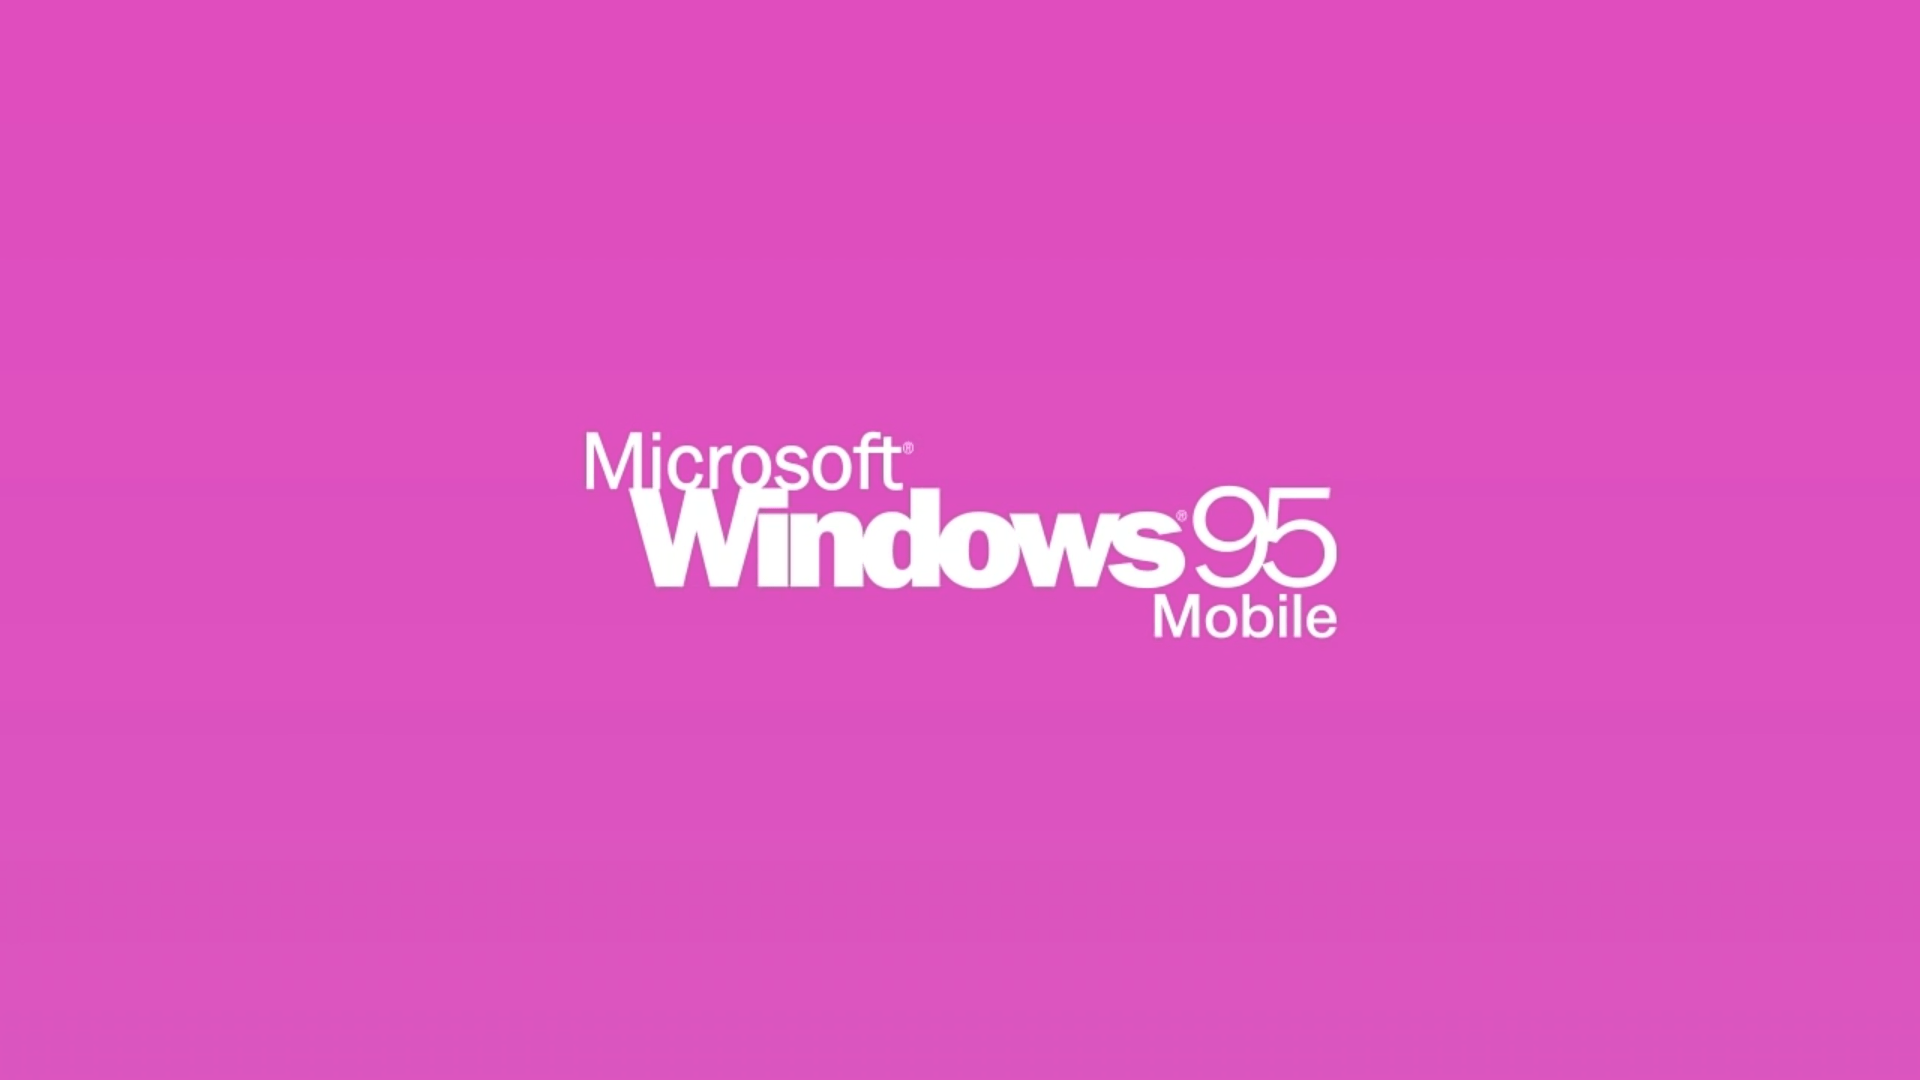 Existió una versión Mobile de Windows 95, aunque parezca mentira